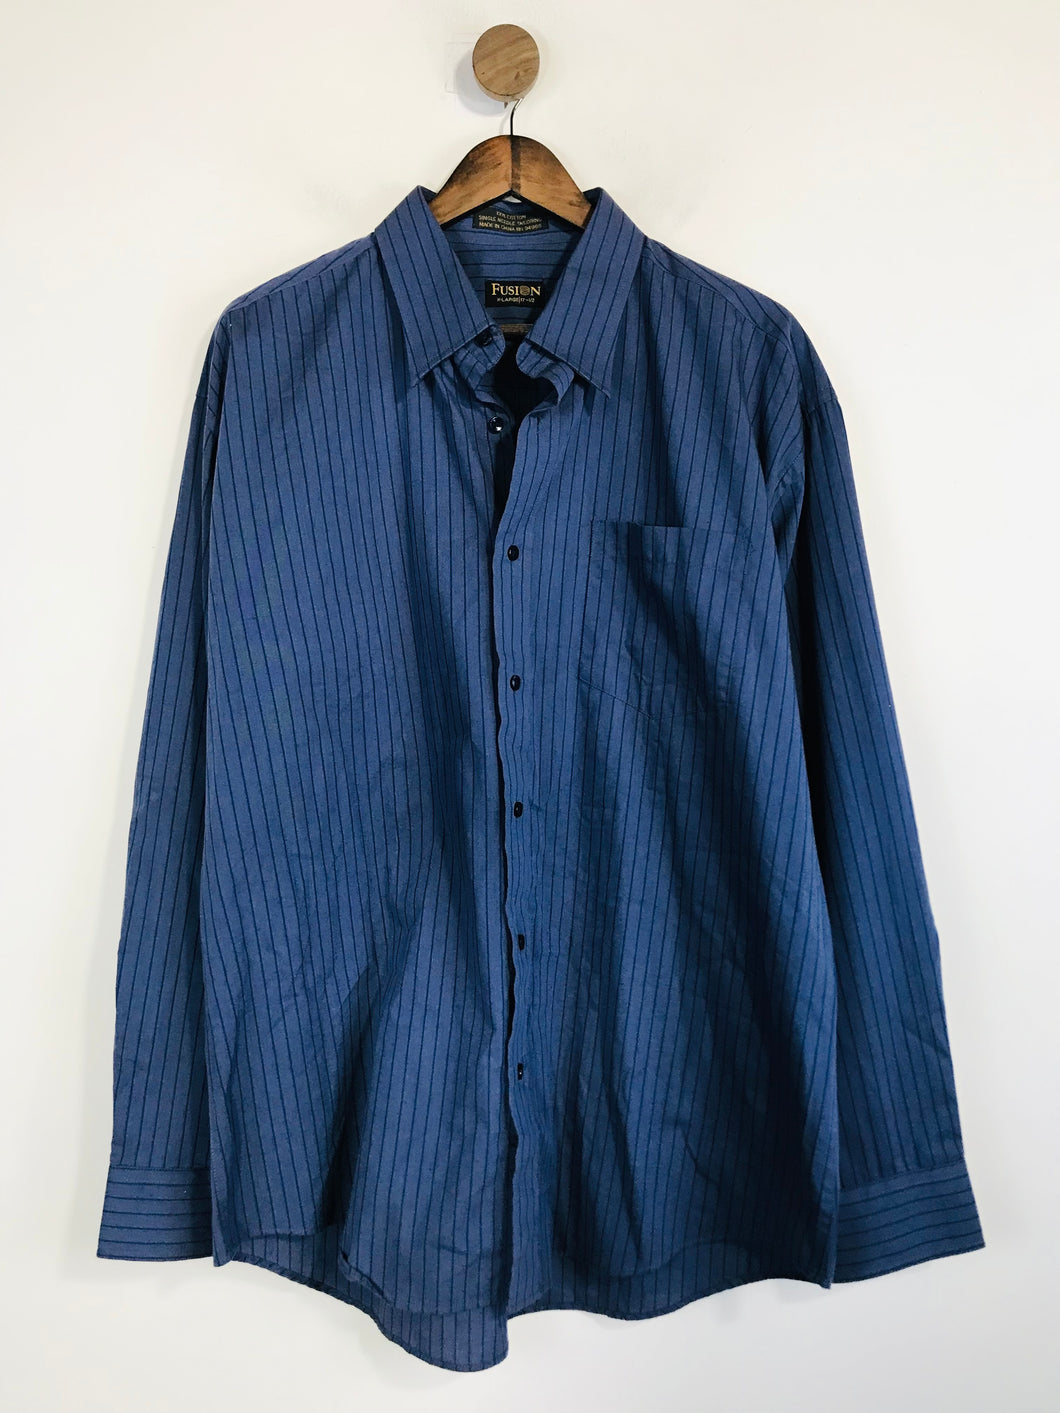 Fusion Men's Cotton Striped Button-Up Shirt | XL | Blue